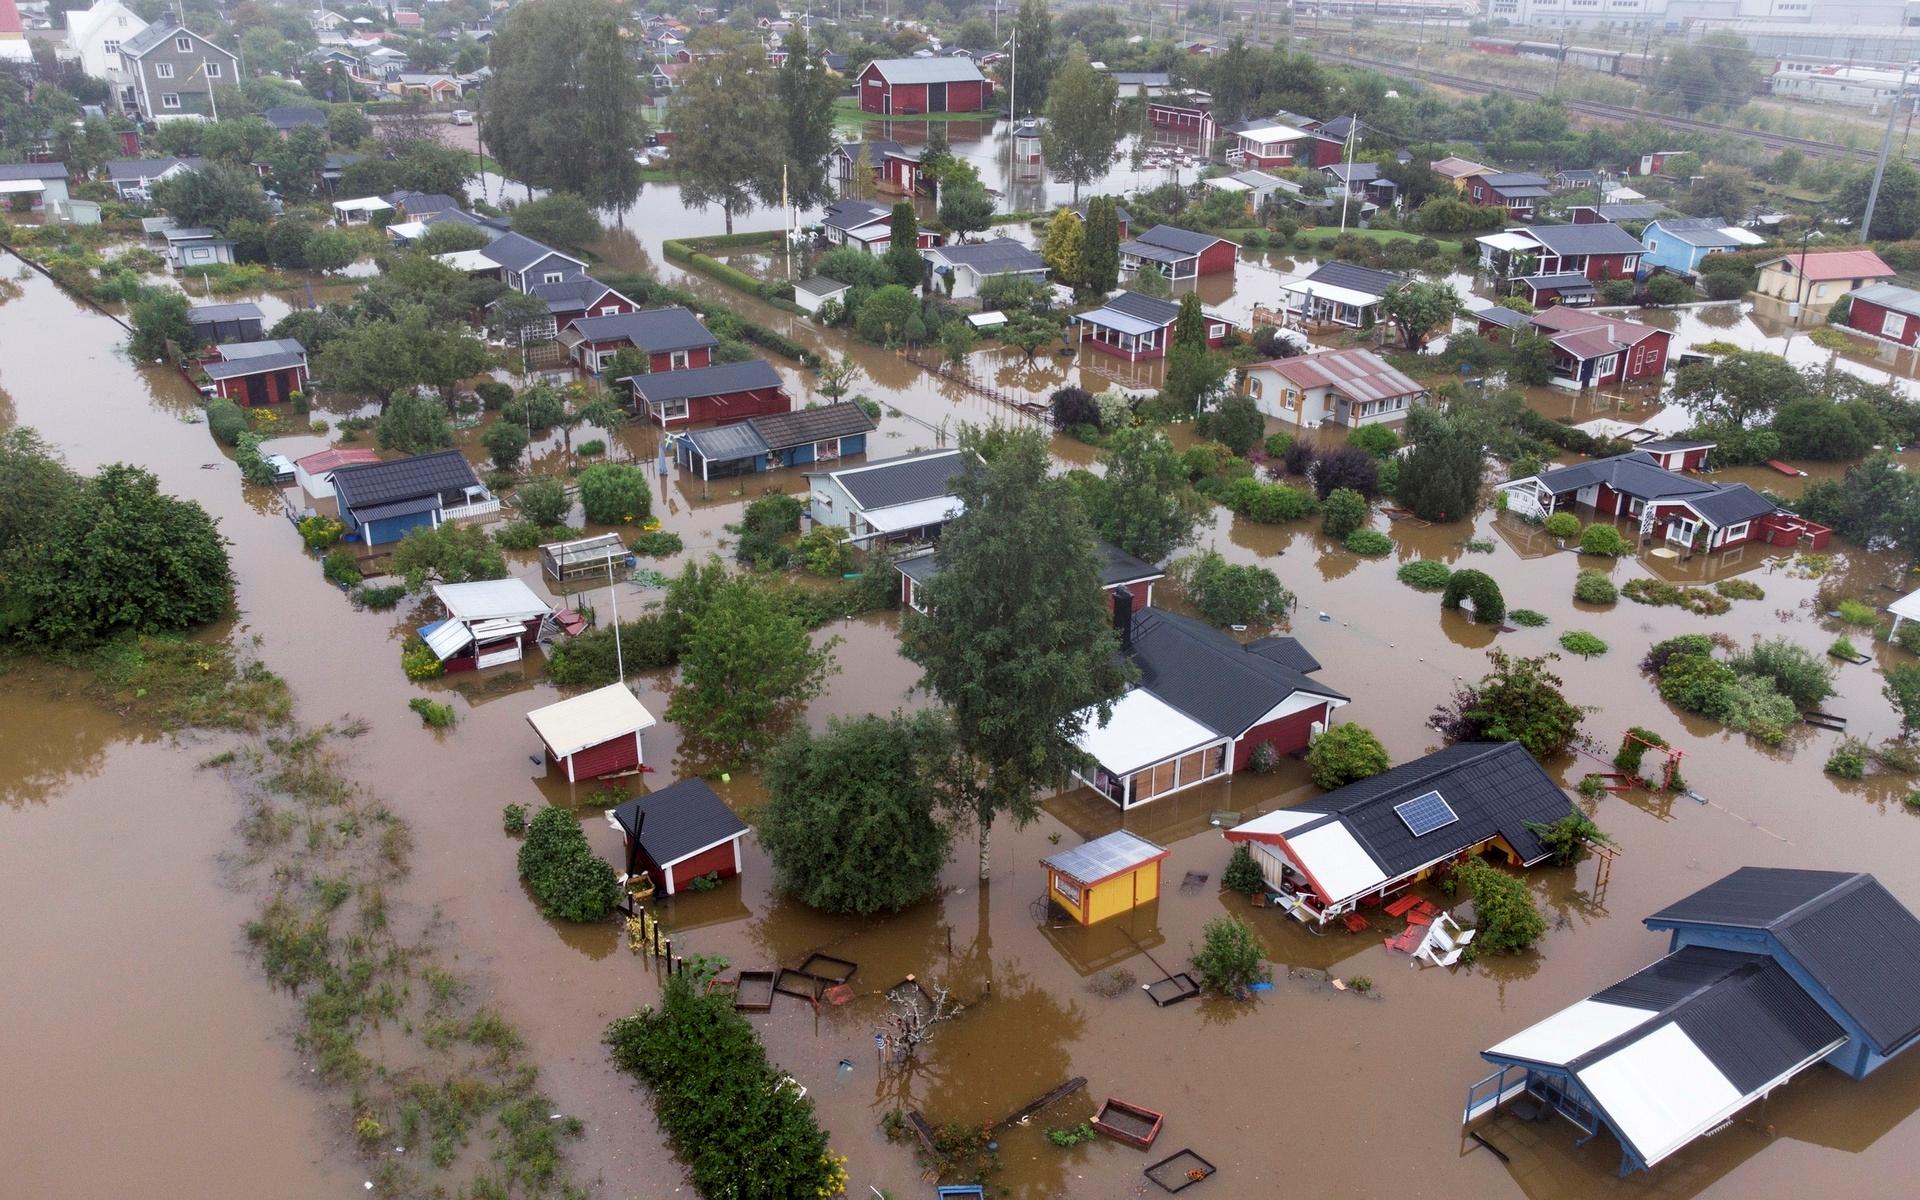 Översvämning vid ett bostadsområde vid Södra Kungsvägen i Gävle. Flera vägar och viadukter står under vatten efter kraftiga skyfall och det är stora störningar i tågtrafiken i Gävle och Dalarna.